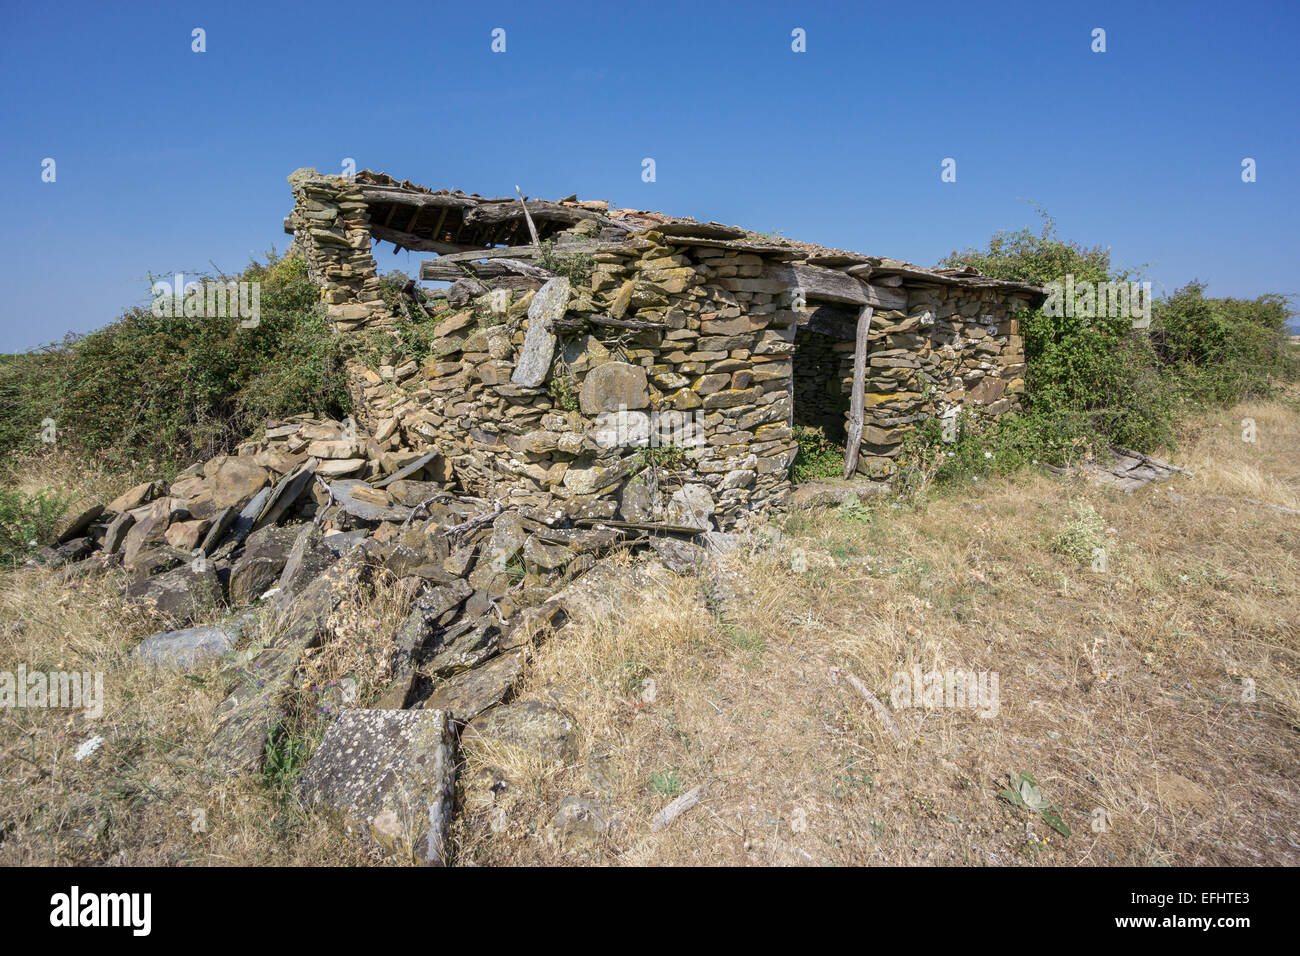 Vieille maison abandonnée faite avec des pierres Banque D'Images